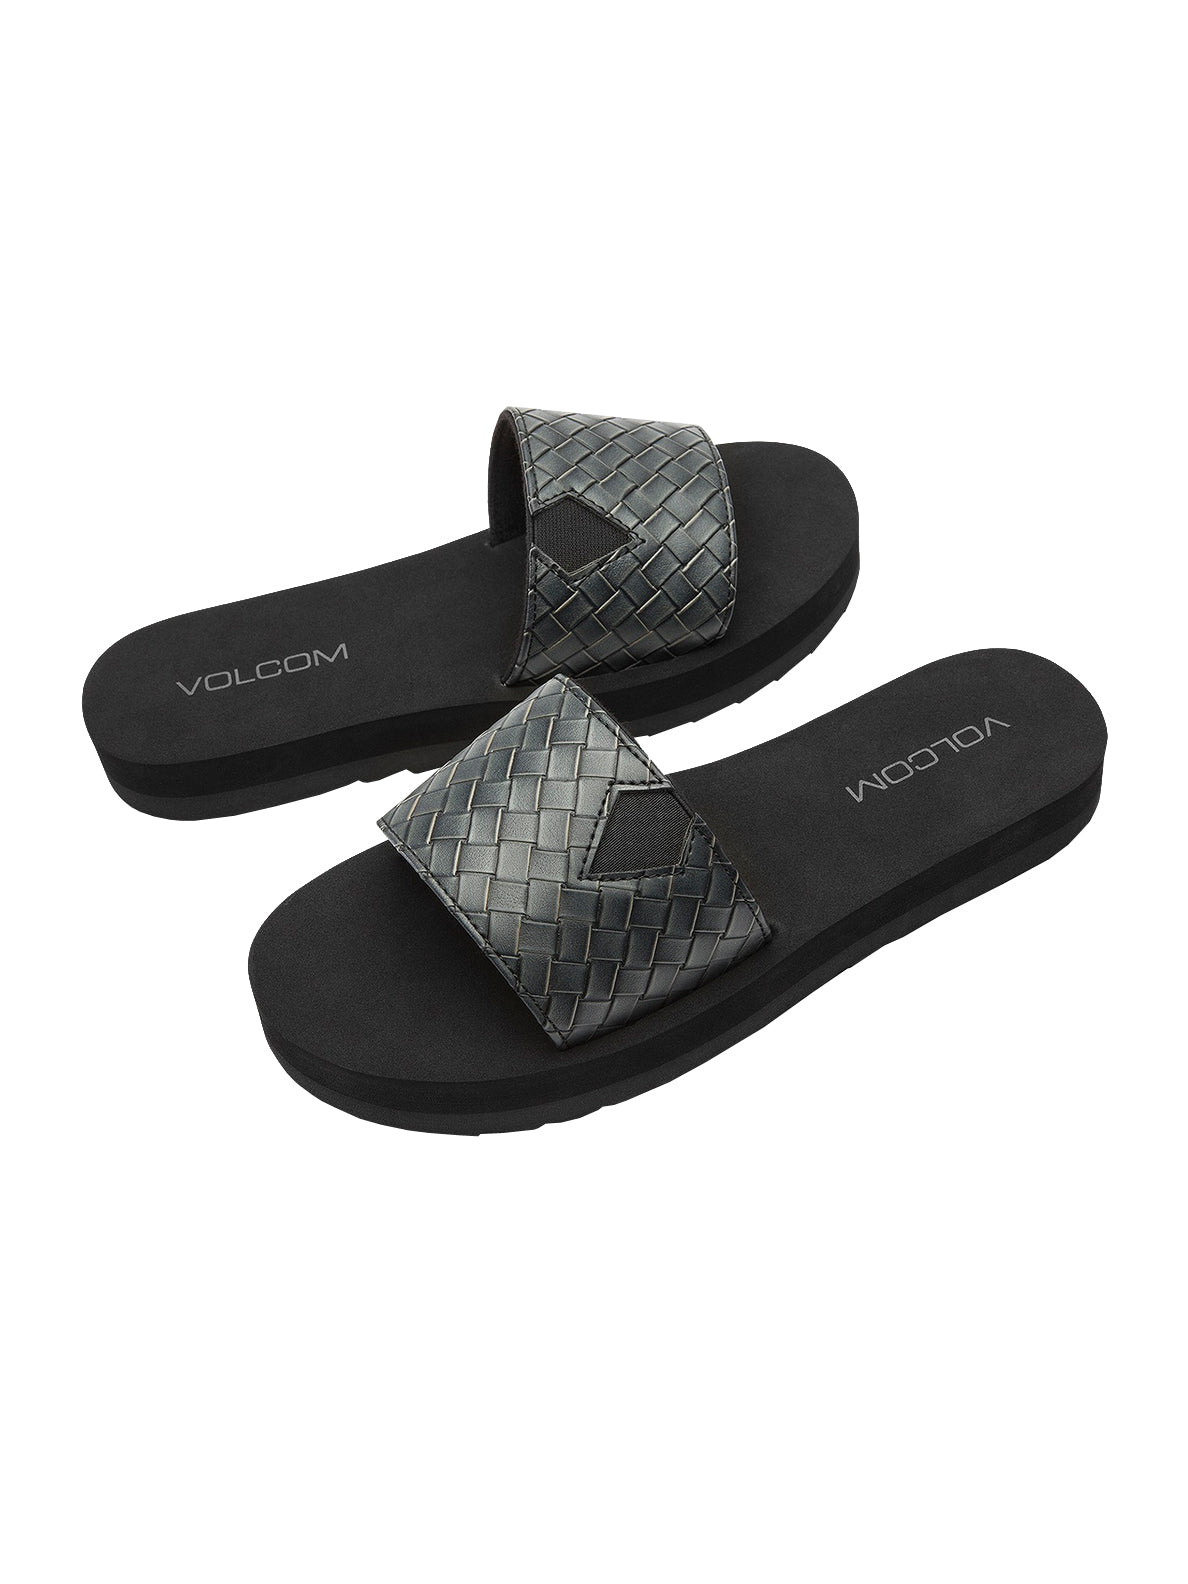 Volcom Not So Simple Slide Womens Sandal BLK-Black 6